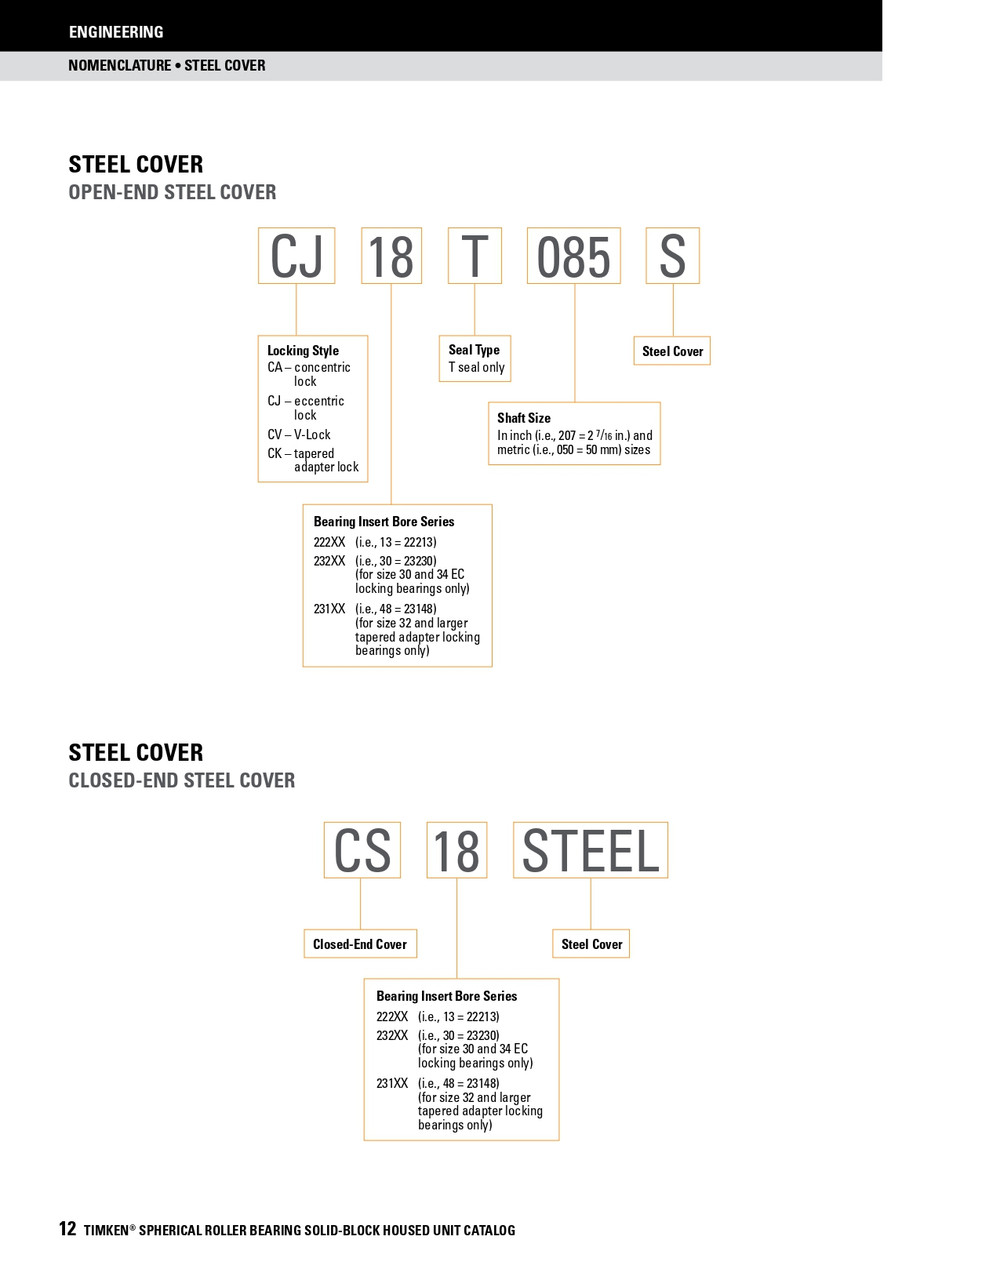 4-1/4" Timken SRB Steel Open End Cover w/Teflon Seal - TA/DV Taper Lock Bushing Type  CK24T404S